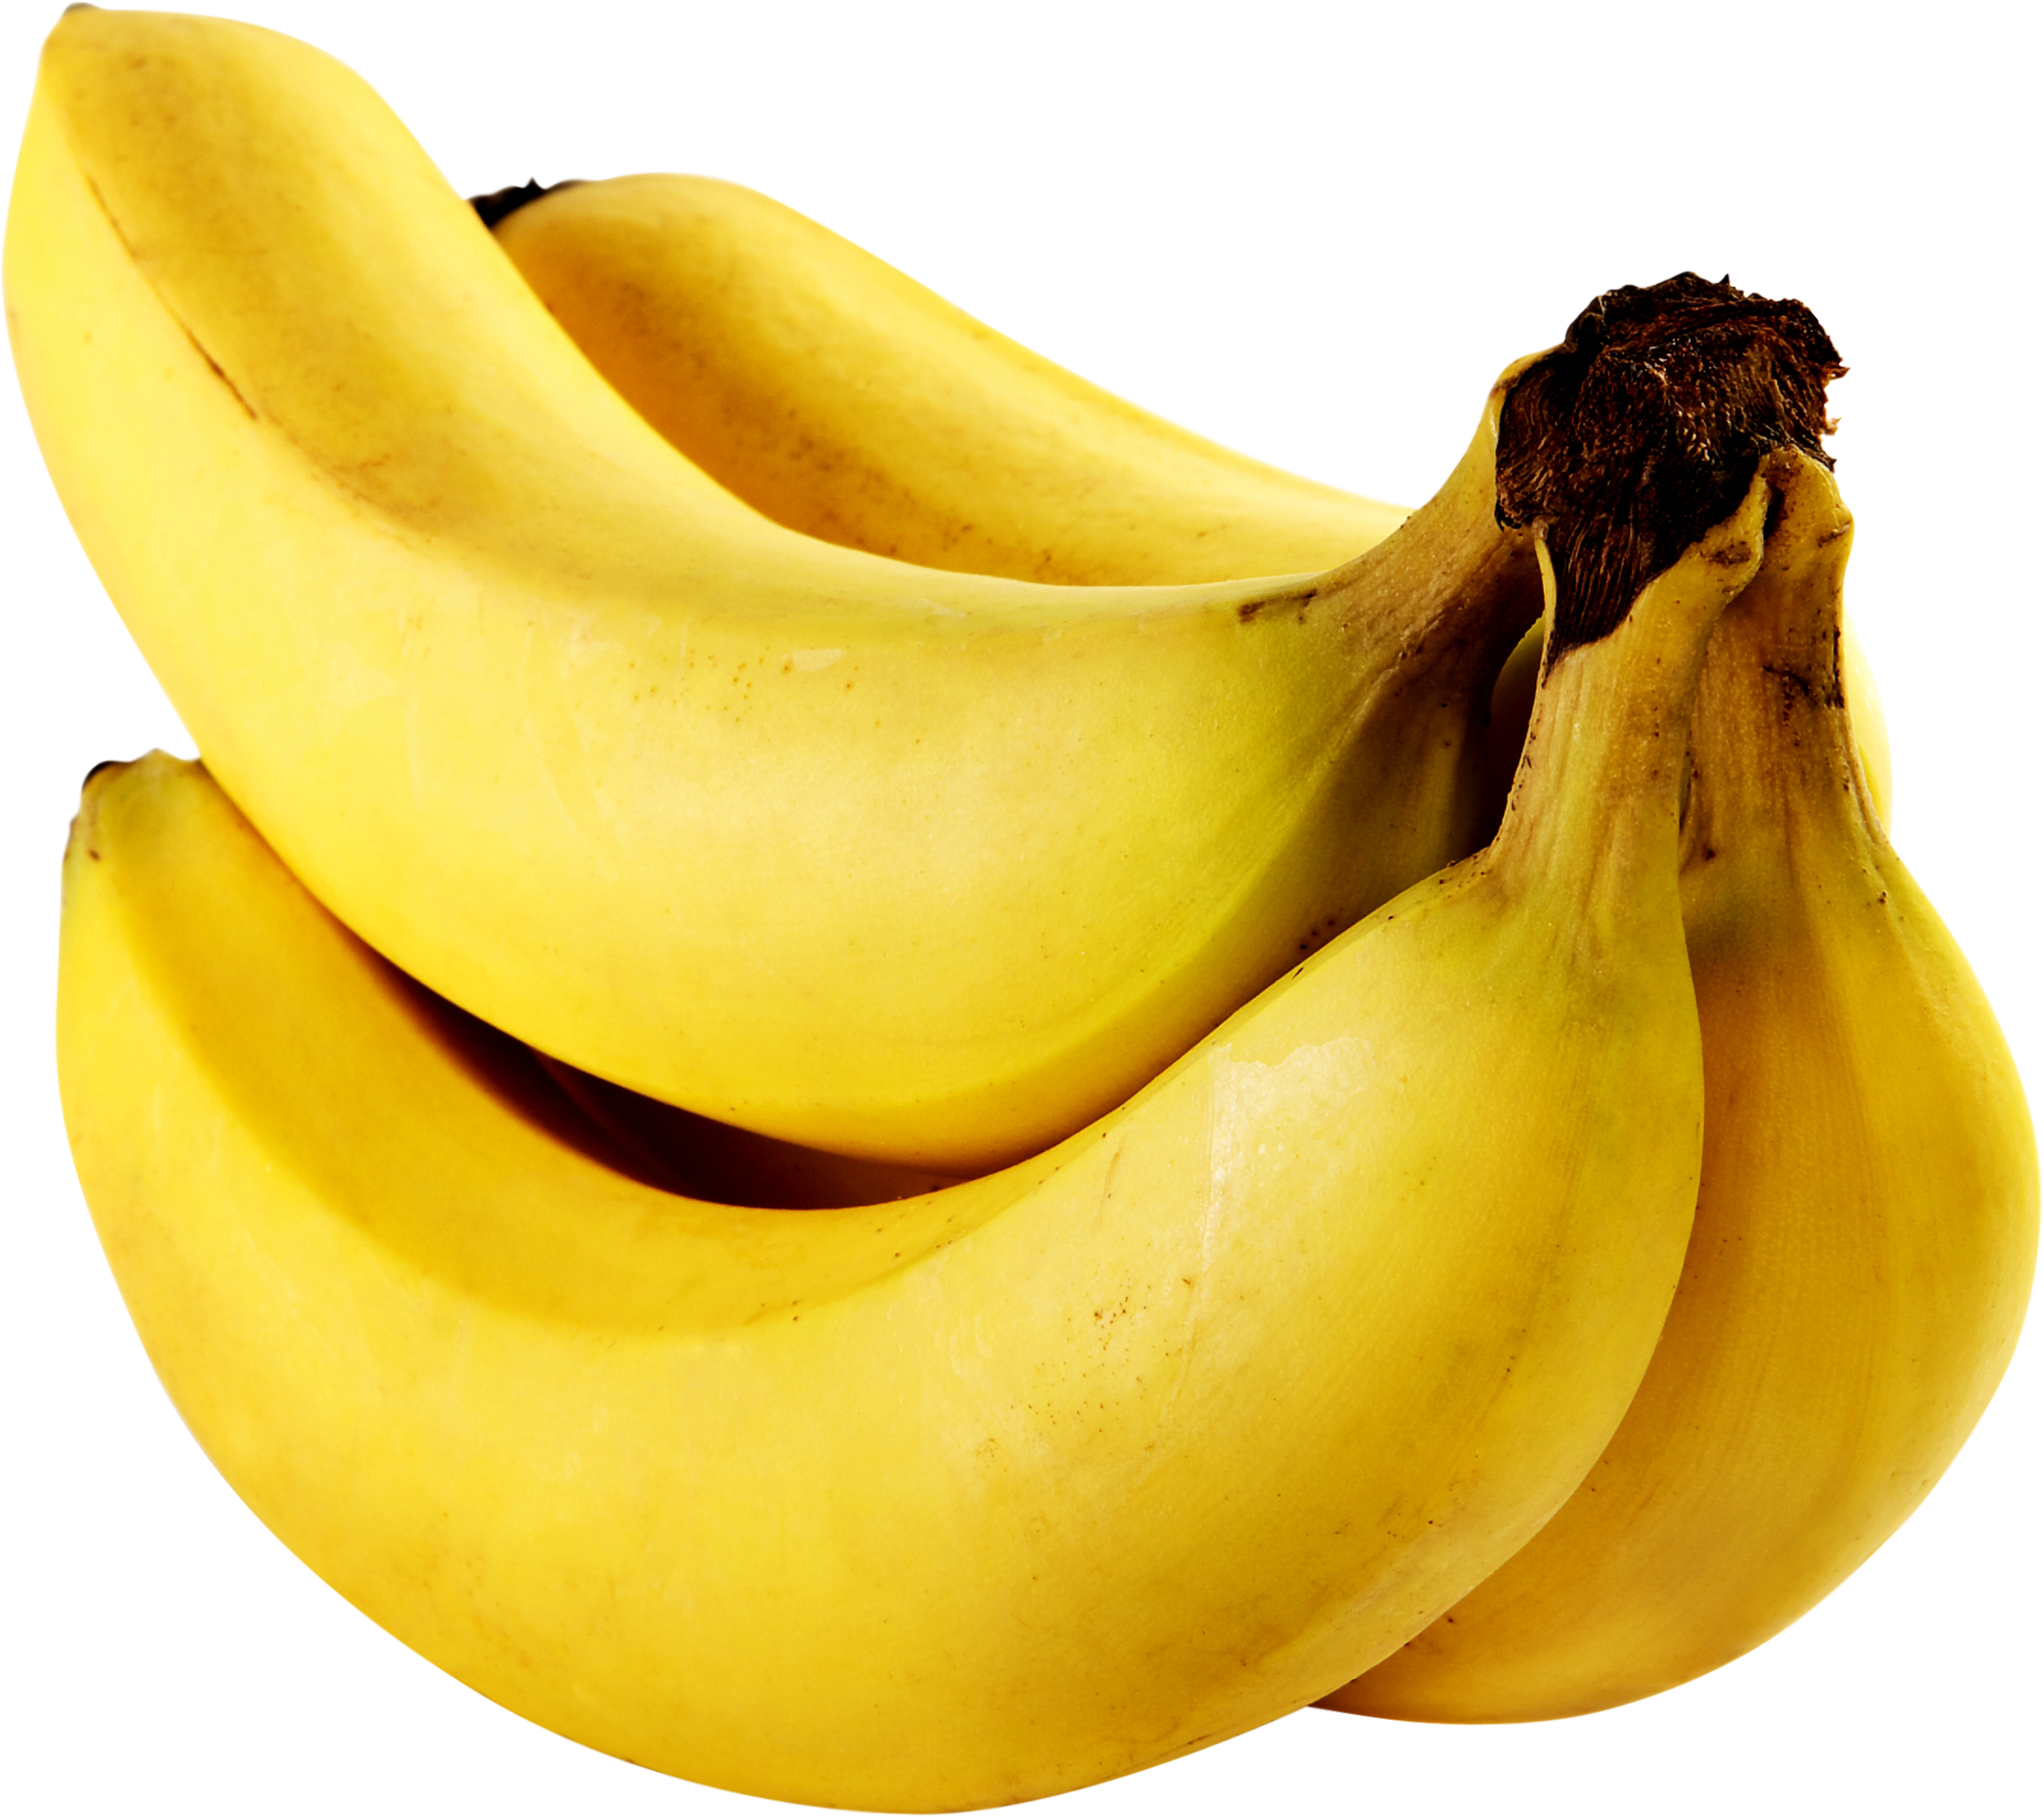 Banana Pics, Food Collection